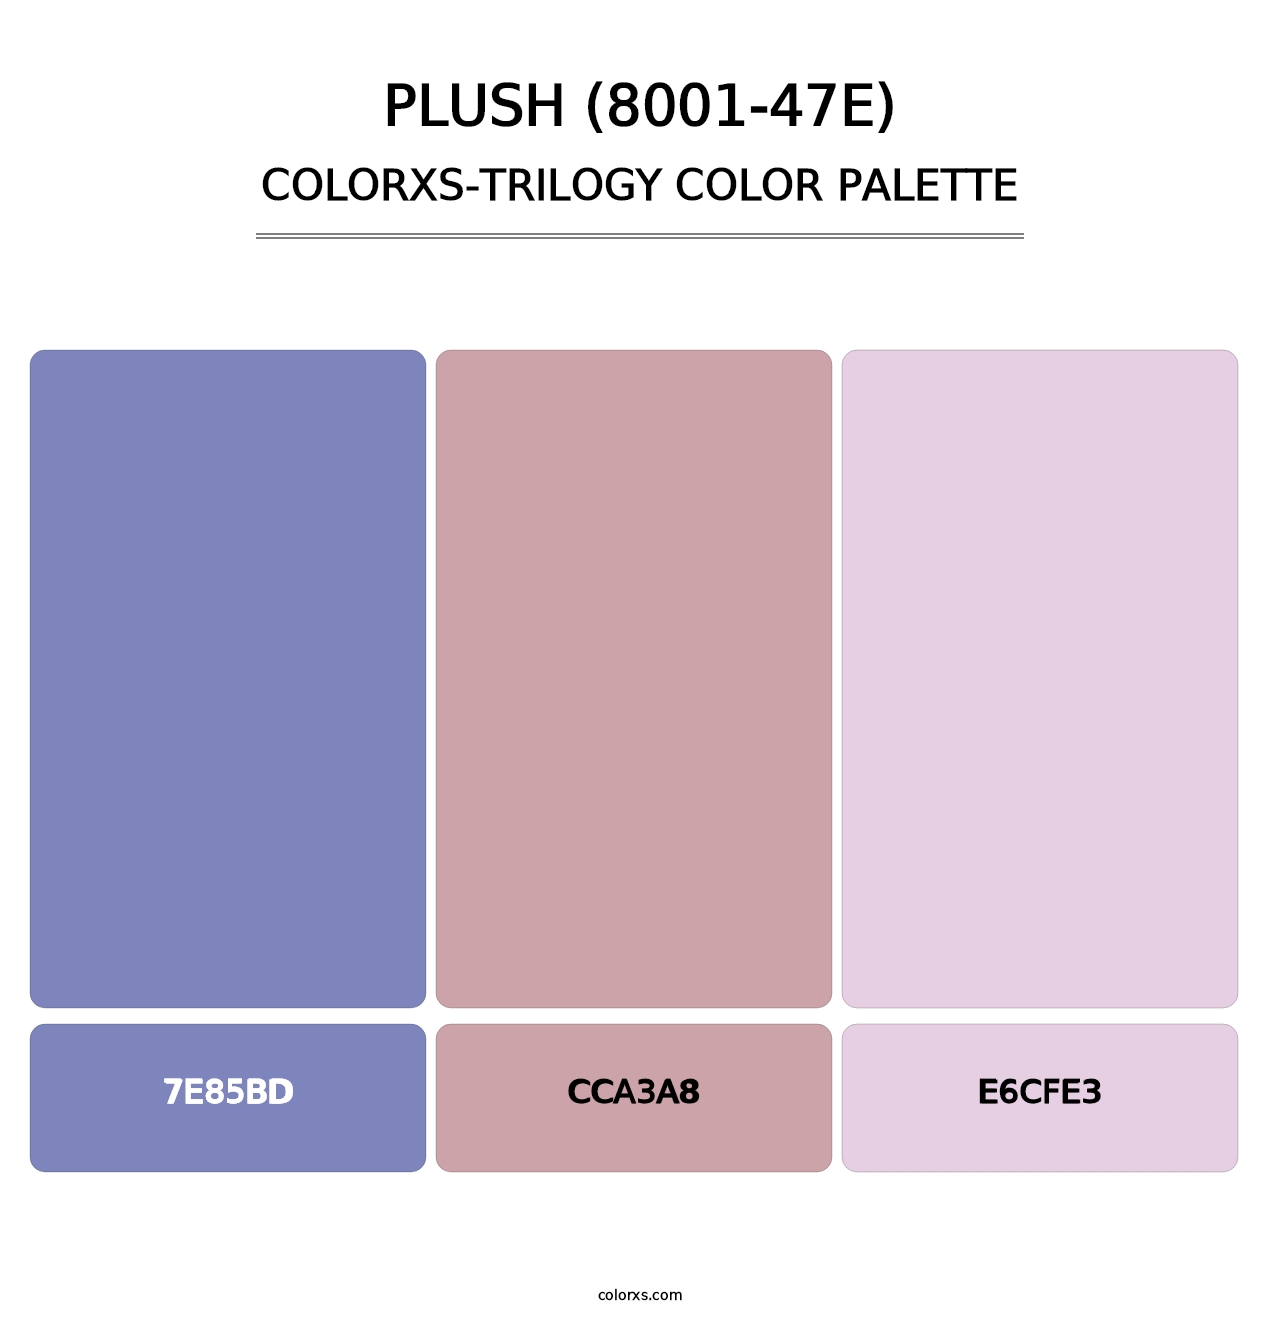 Plush (8001-47E) - Colorxs Trilogy Palette